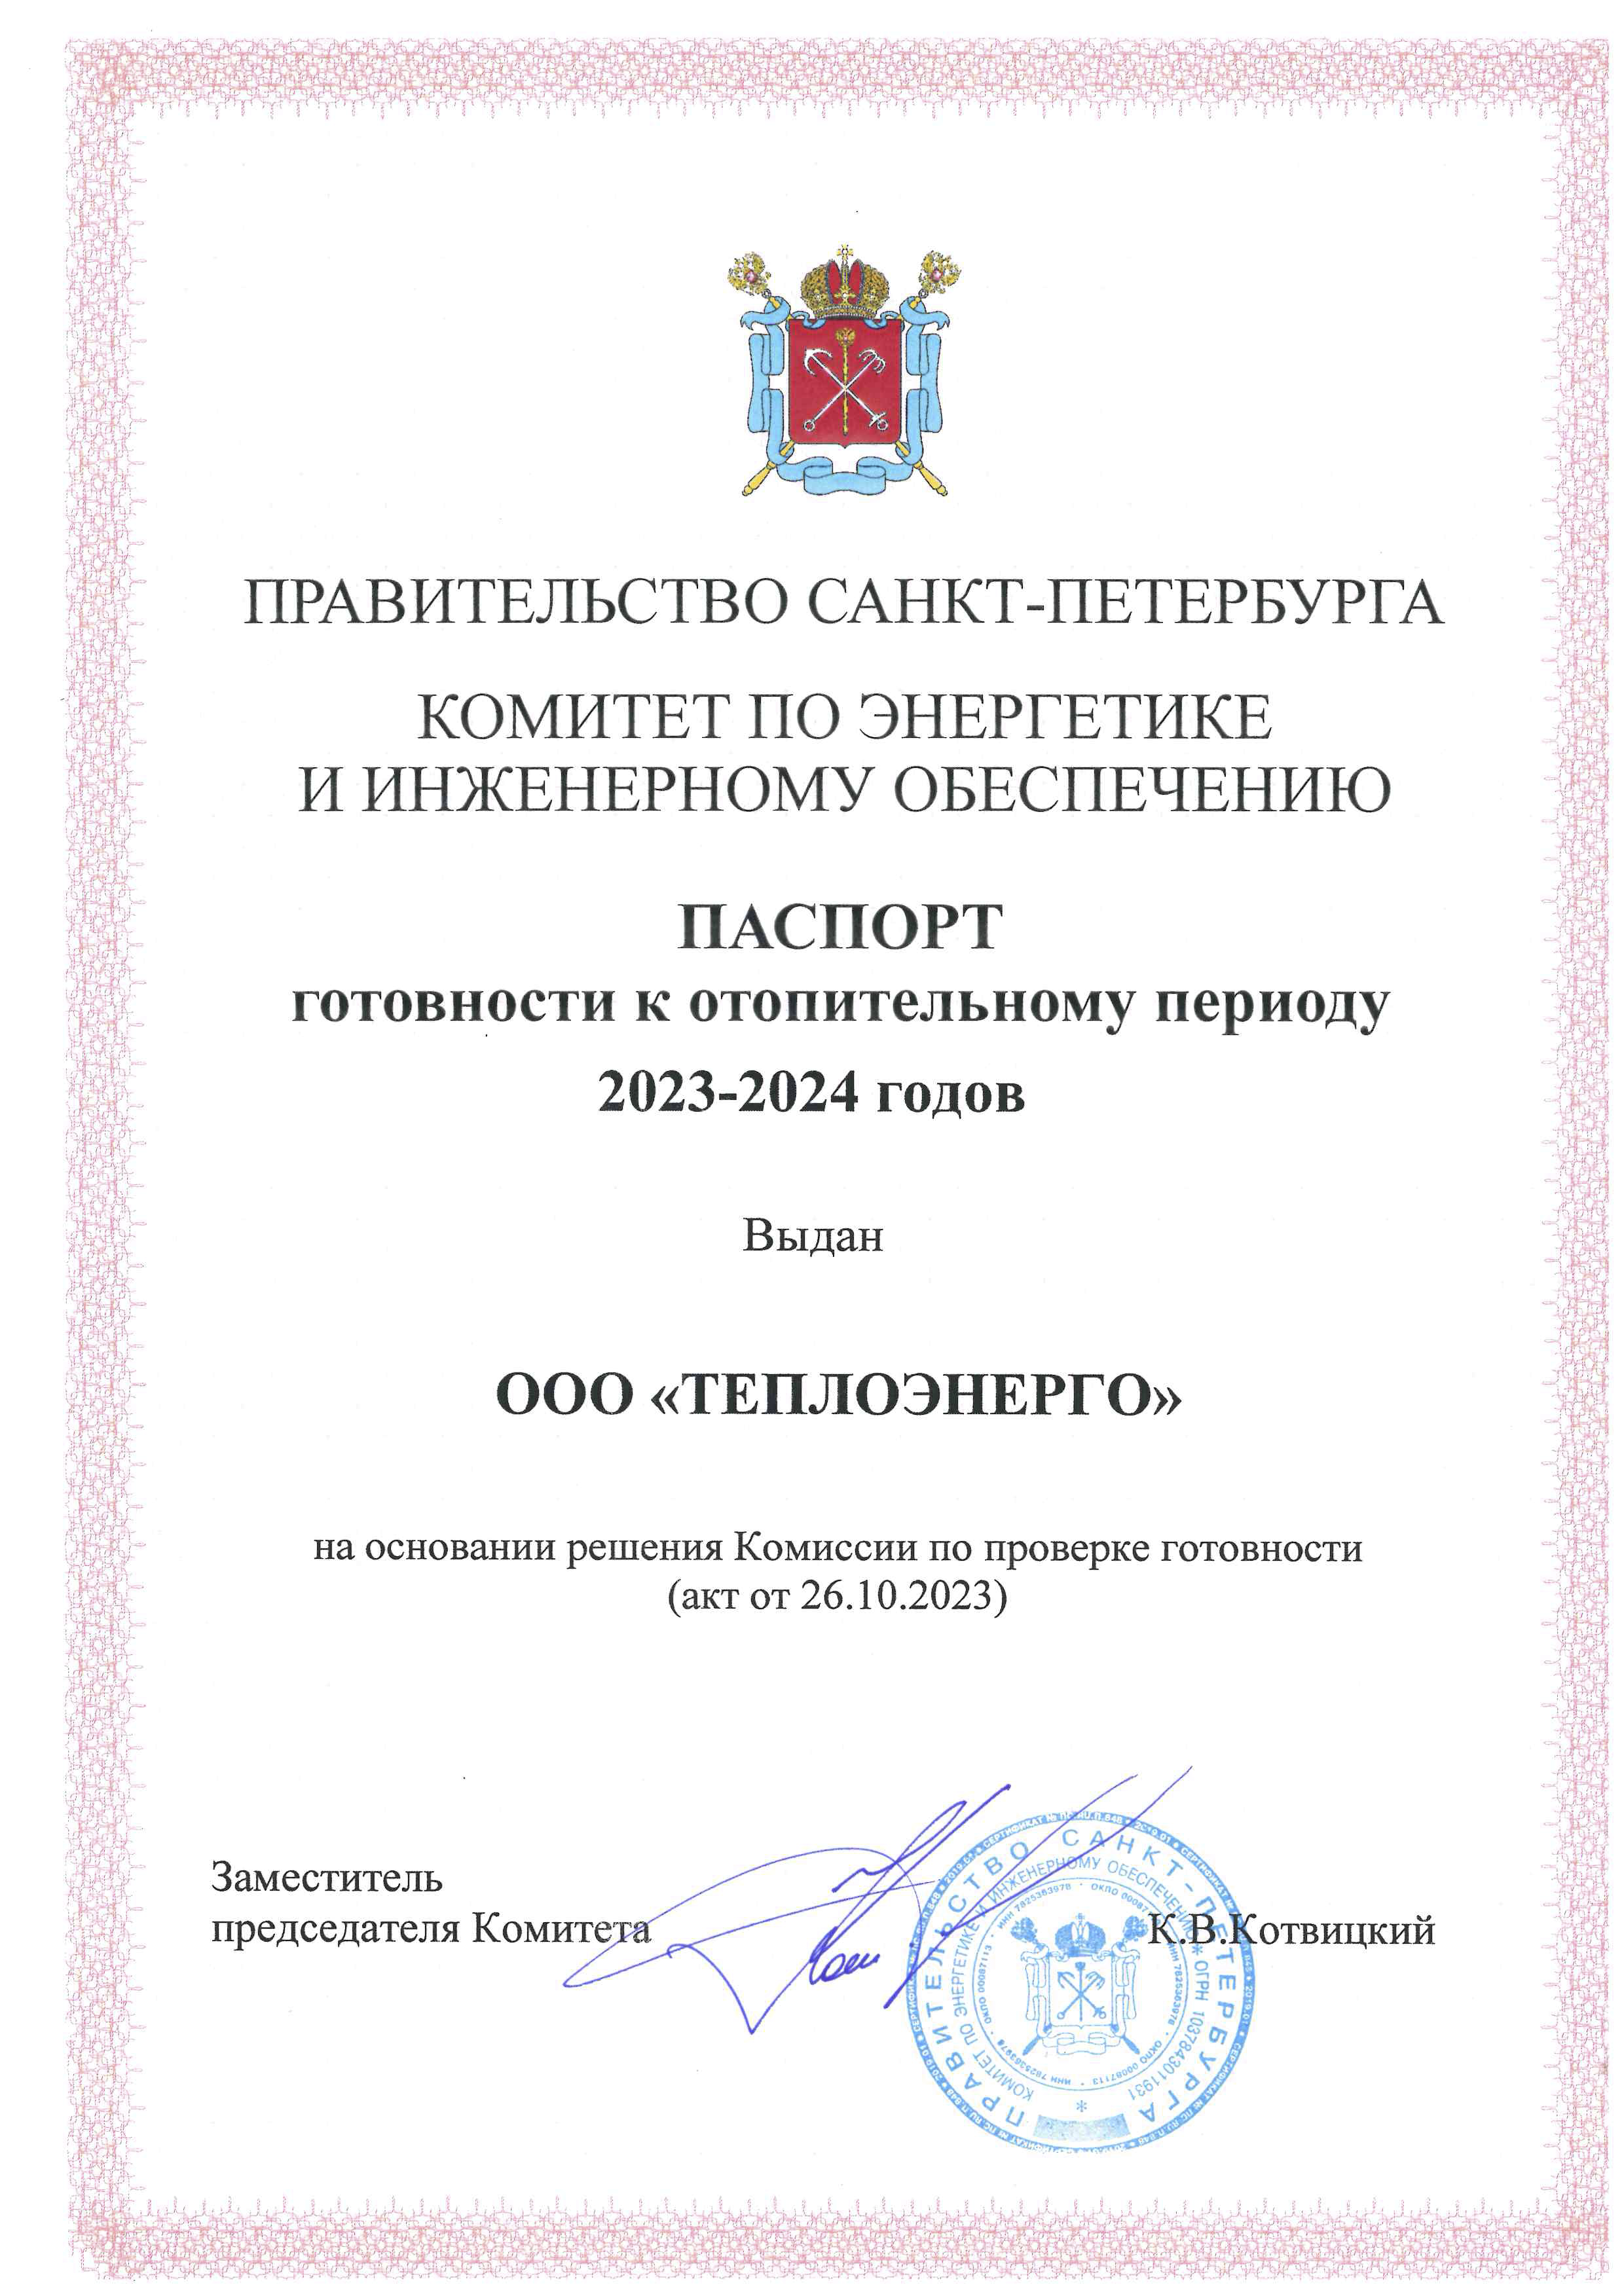 ООО «ТЕПЛОЭНЕРГО» получили паспорт готовности к отопительному сезону 2023-2024 годов: слайд 1